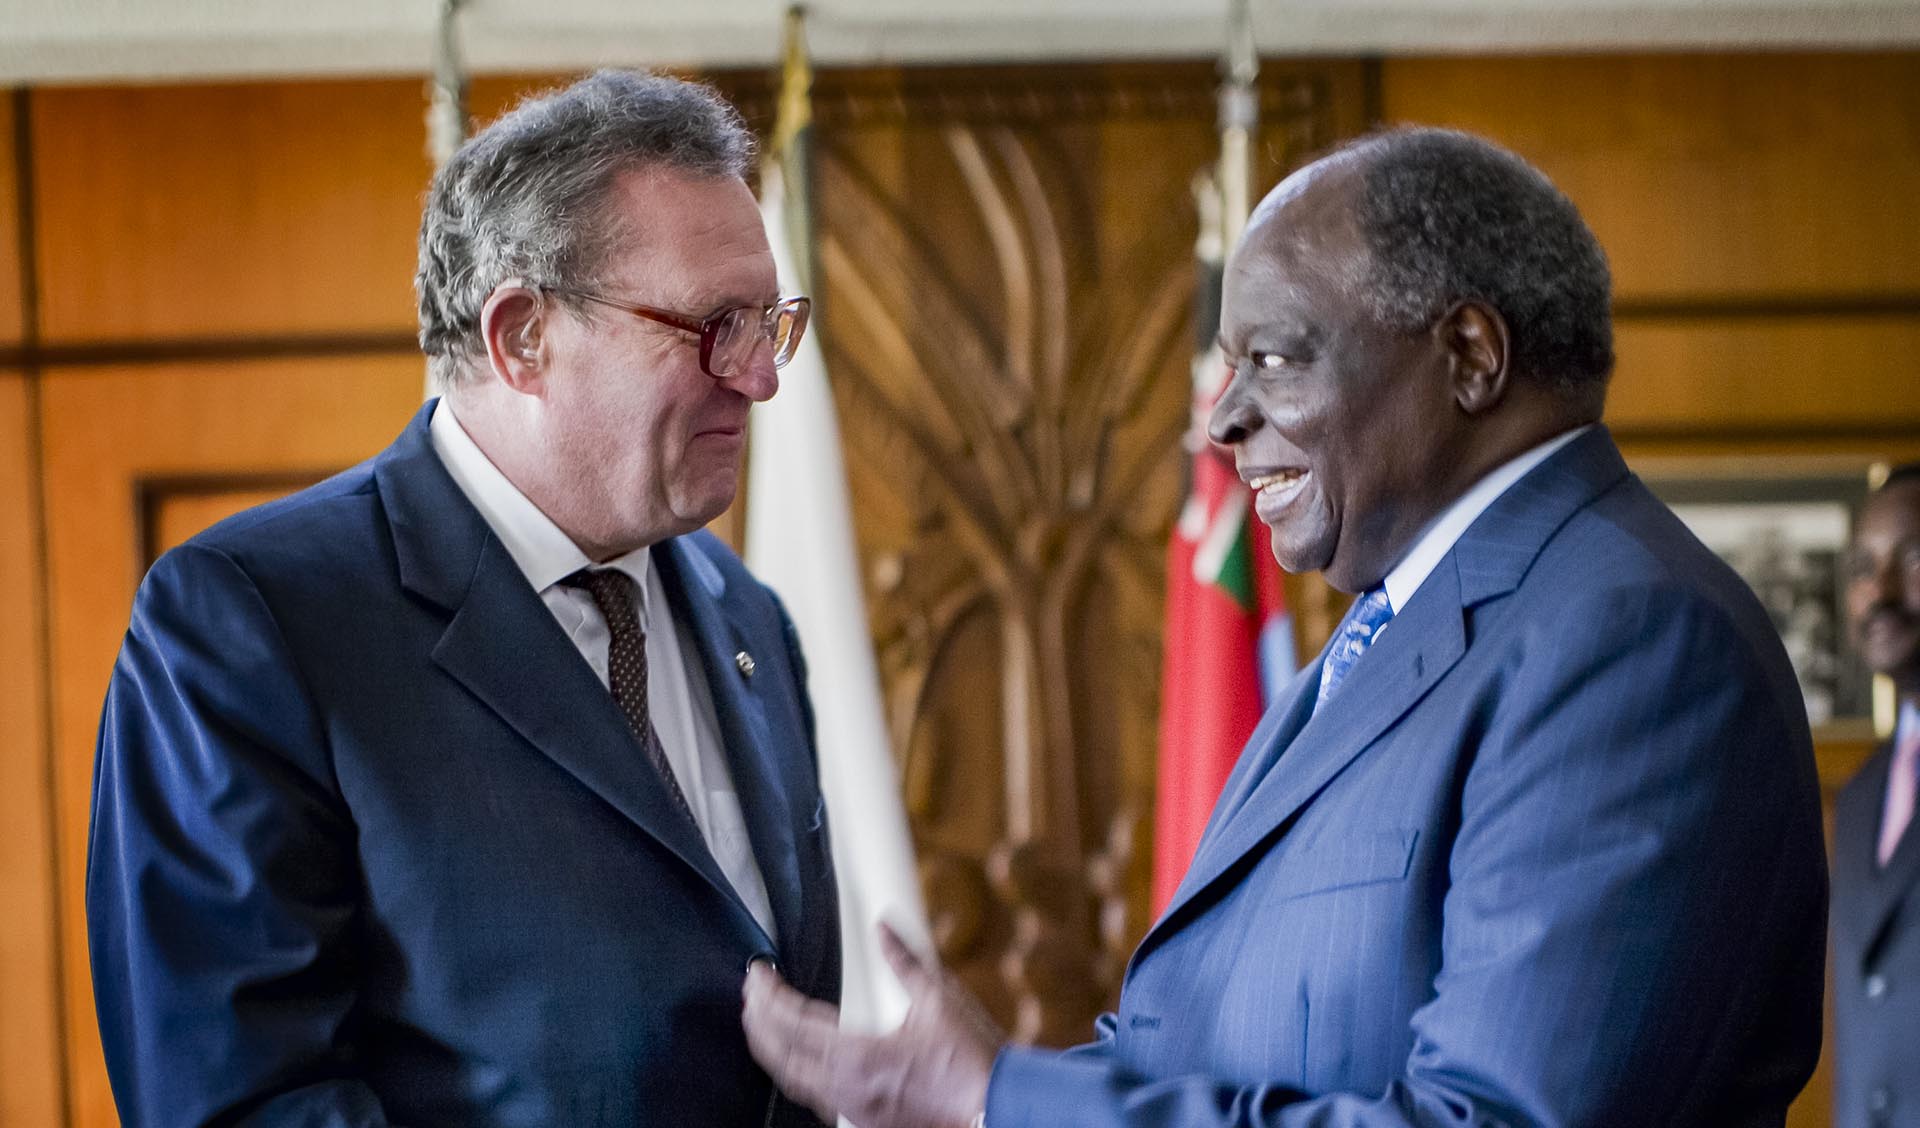 Il Gran Maestro in Kenya incontra il presidente Kibaki: “insieme per gli obiettivi del millennio”